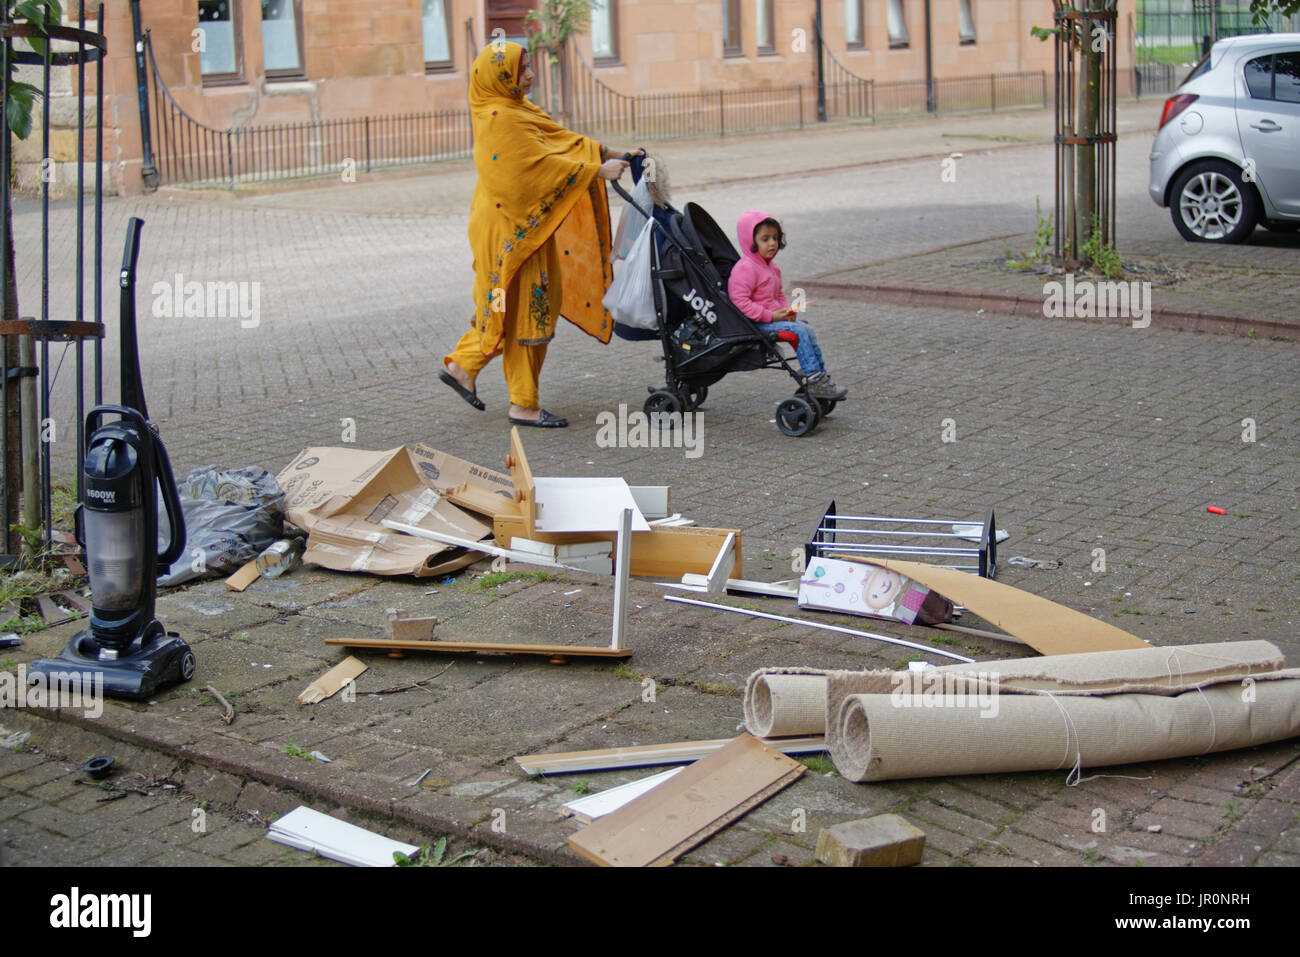 Glasgow govanhill famille asiatique vêtue de réfugiés foulard hijab sur street au Royaume-Uni scène quotidienne carrying shopping bags Banque D'Images